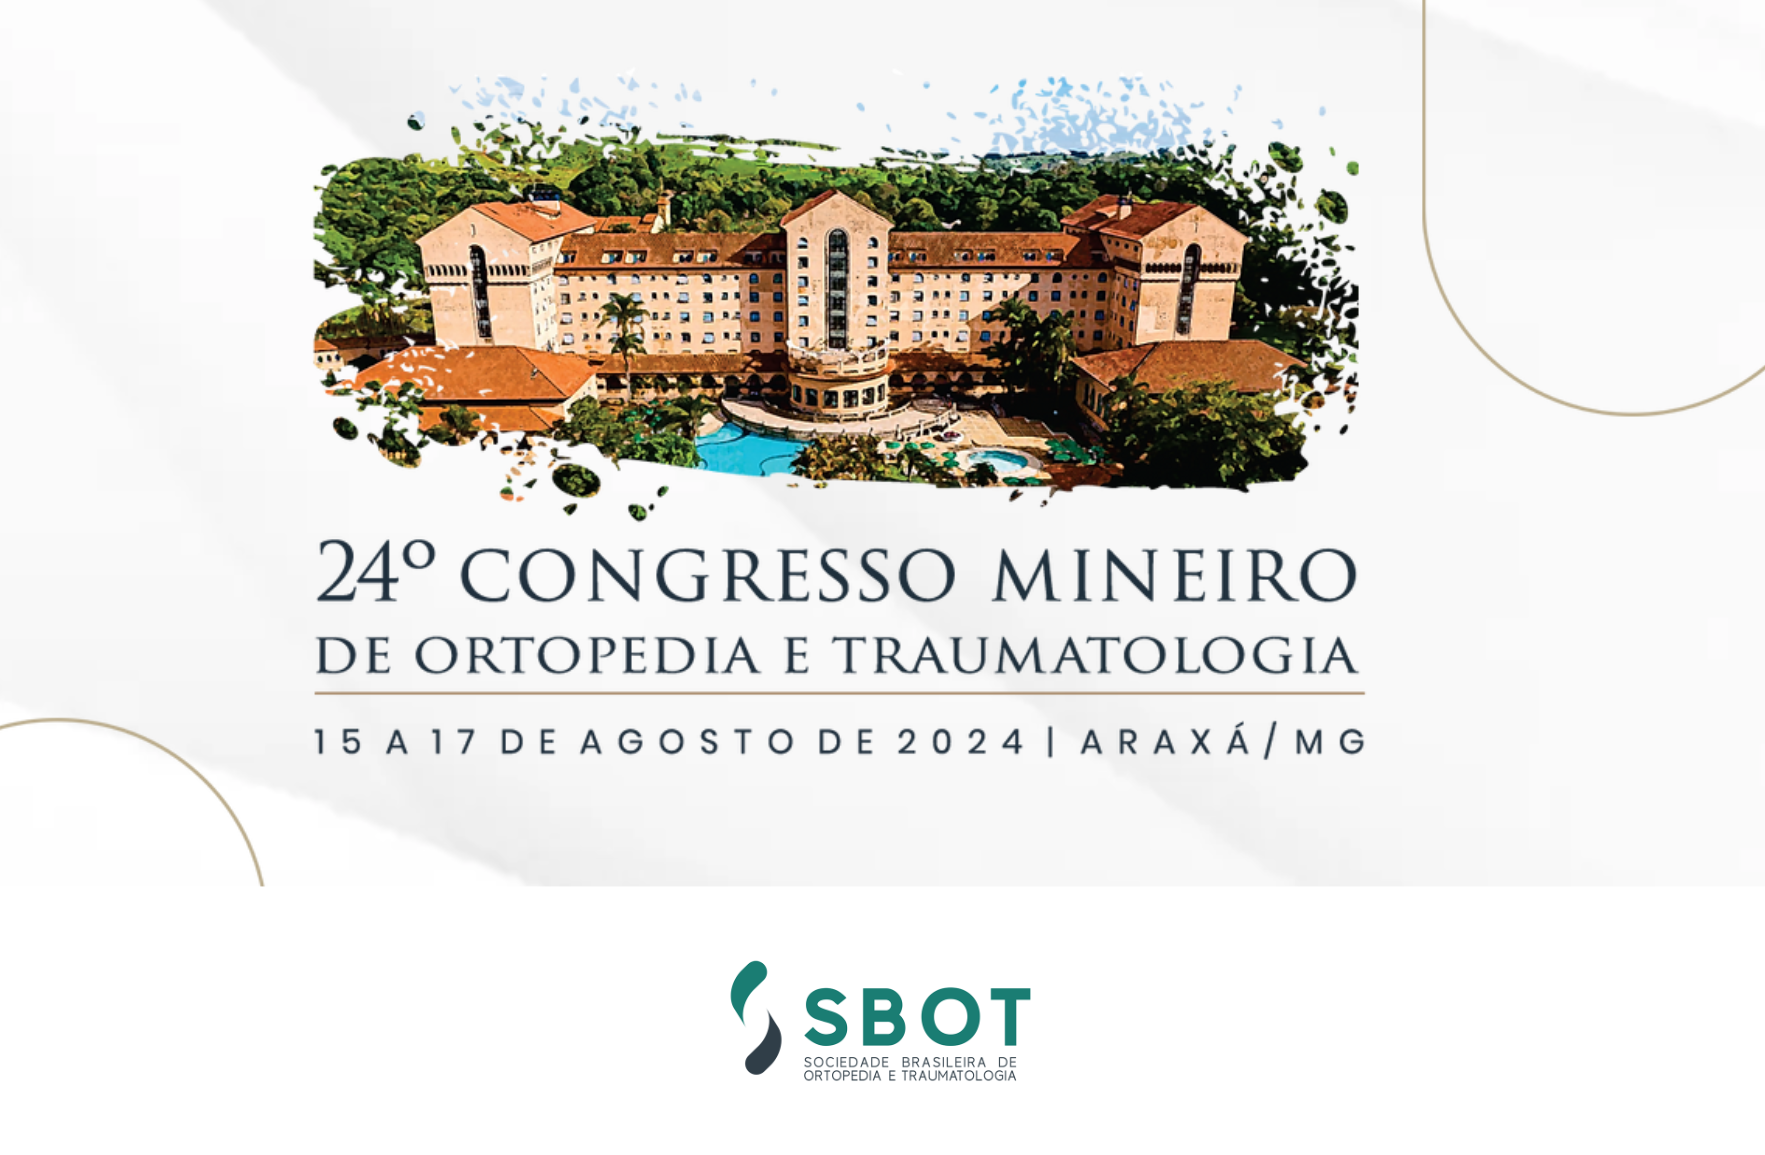 24° Congresso Mineiro de Ortopedia e Traumatologia